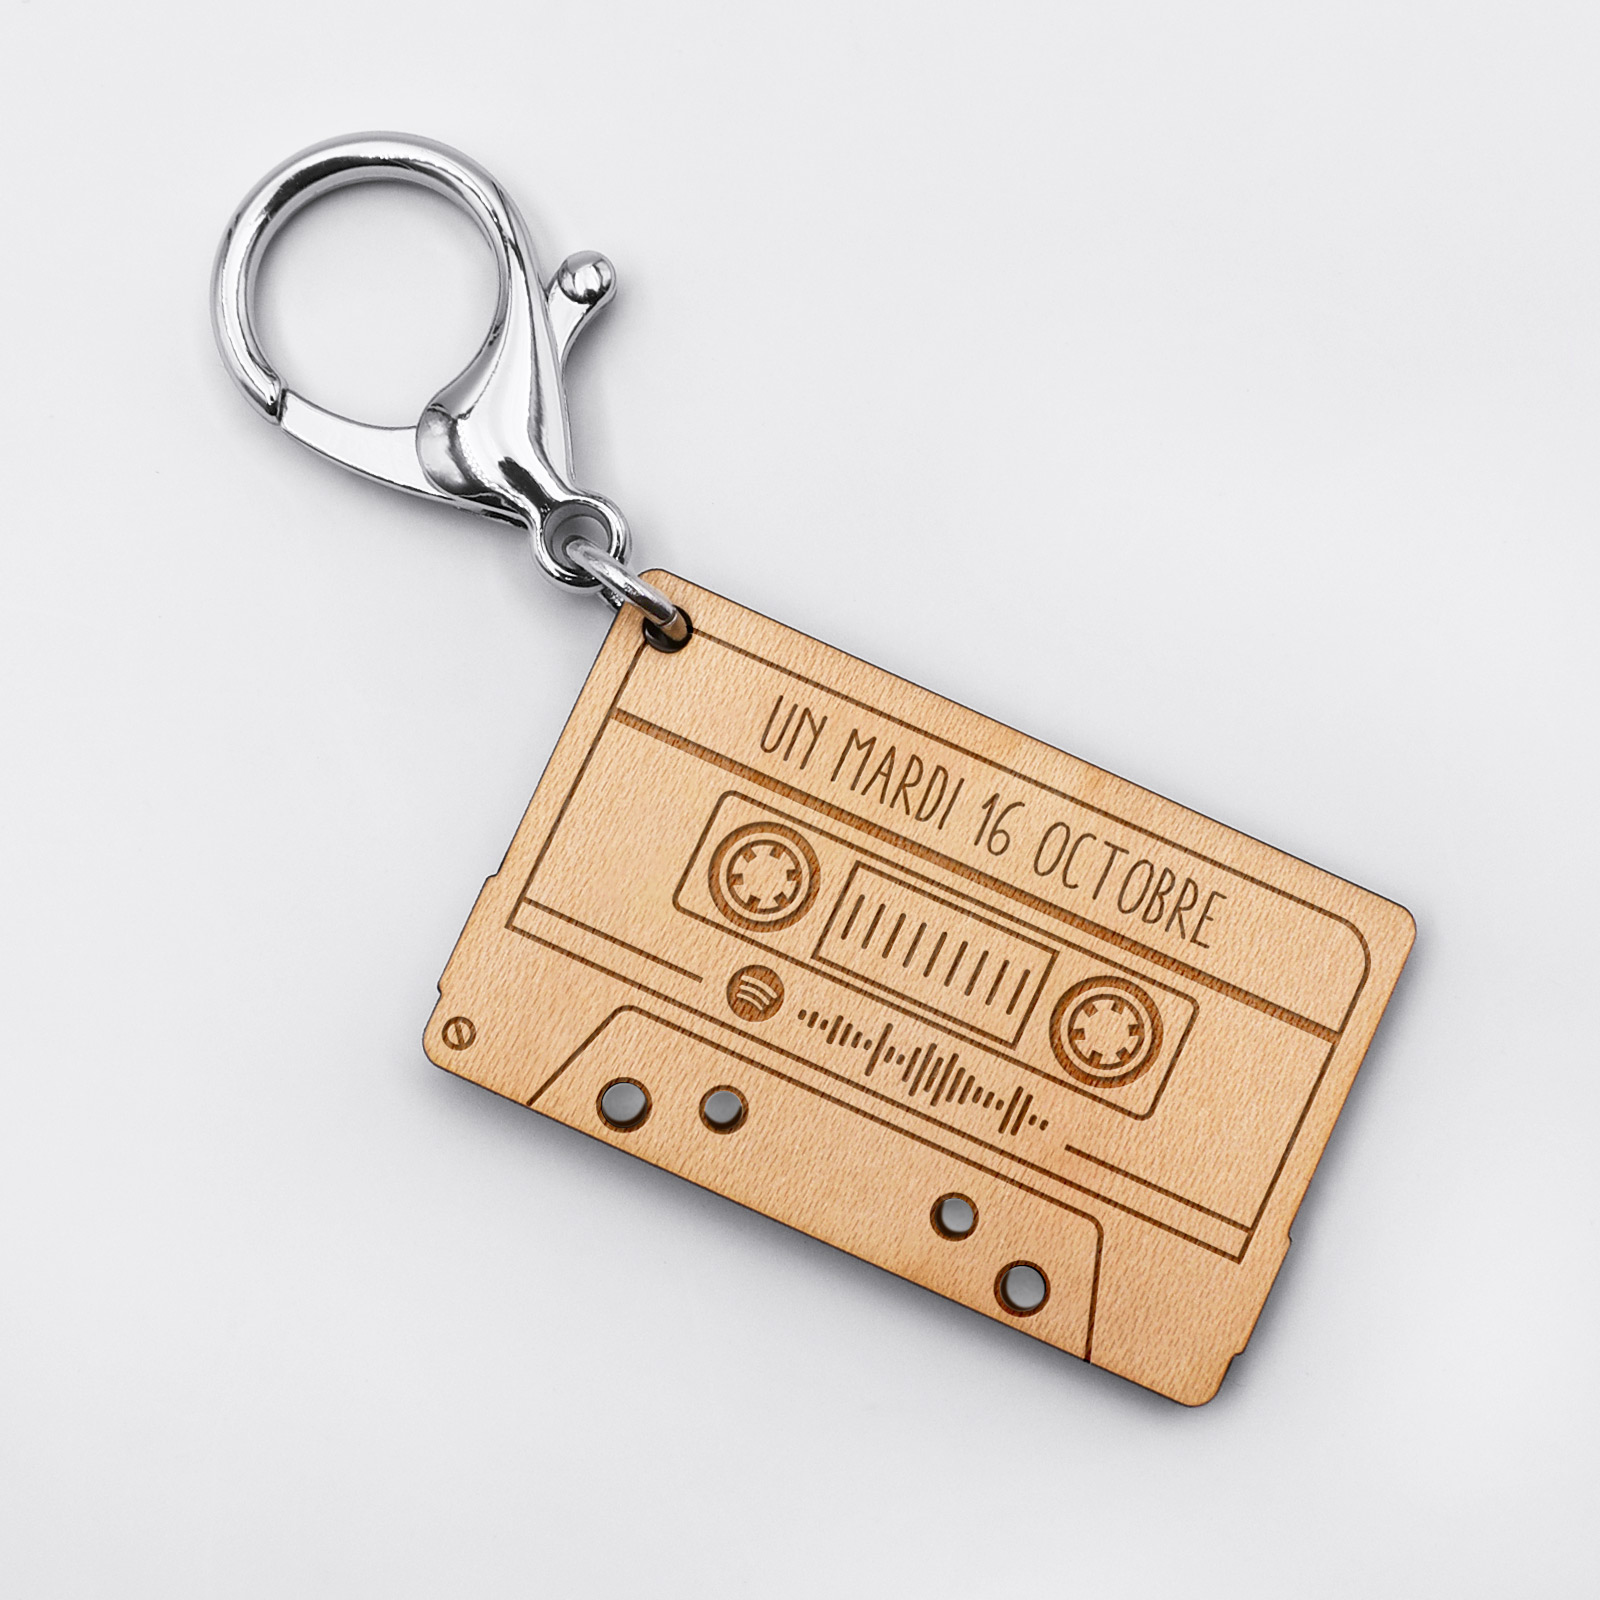 porte-clés en cuir personnalisé avec prénom : idée cadeau originale